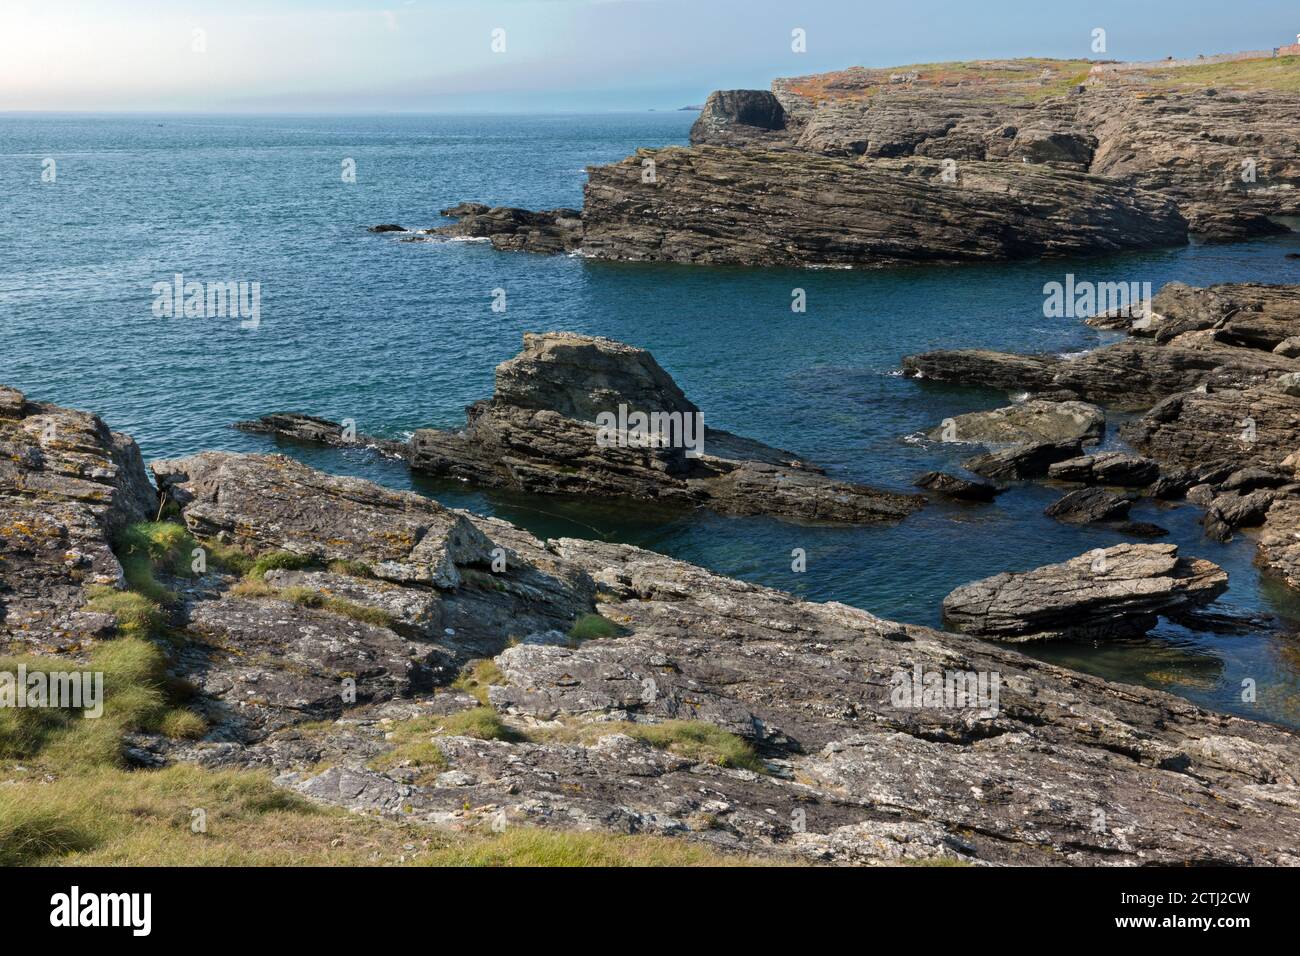 Penrhos Bay in der Nähe von Trearddur auf Holy Island, Anglesey, Nordwales, ist eine kleine Bucht mit dramatischen Klippen, die aus präkambrischen Felsen bestehen. Stockfoto